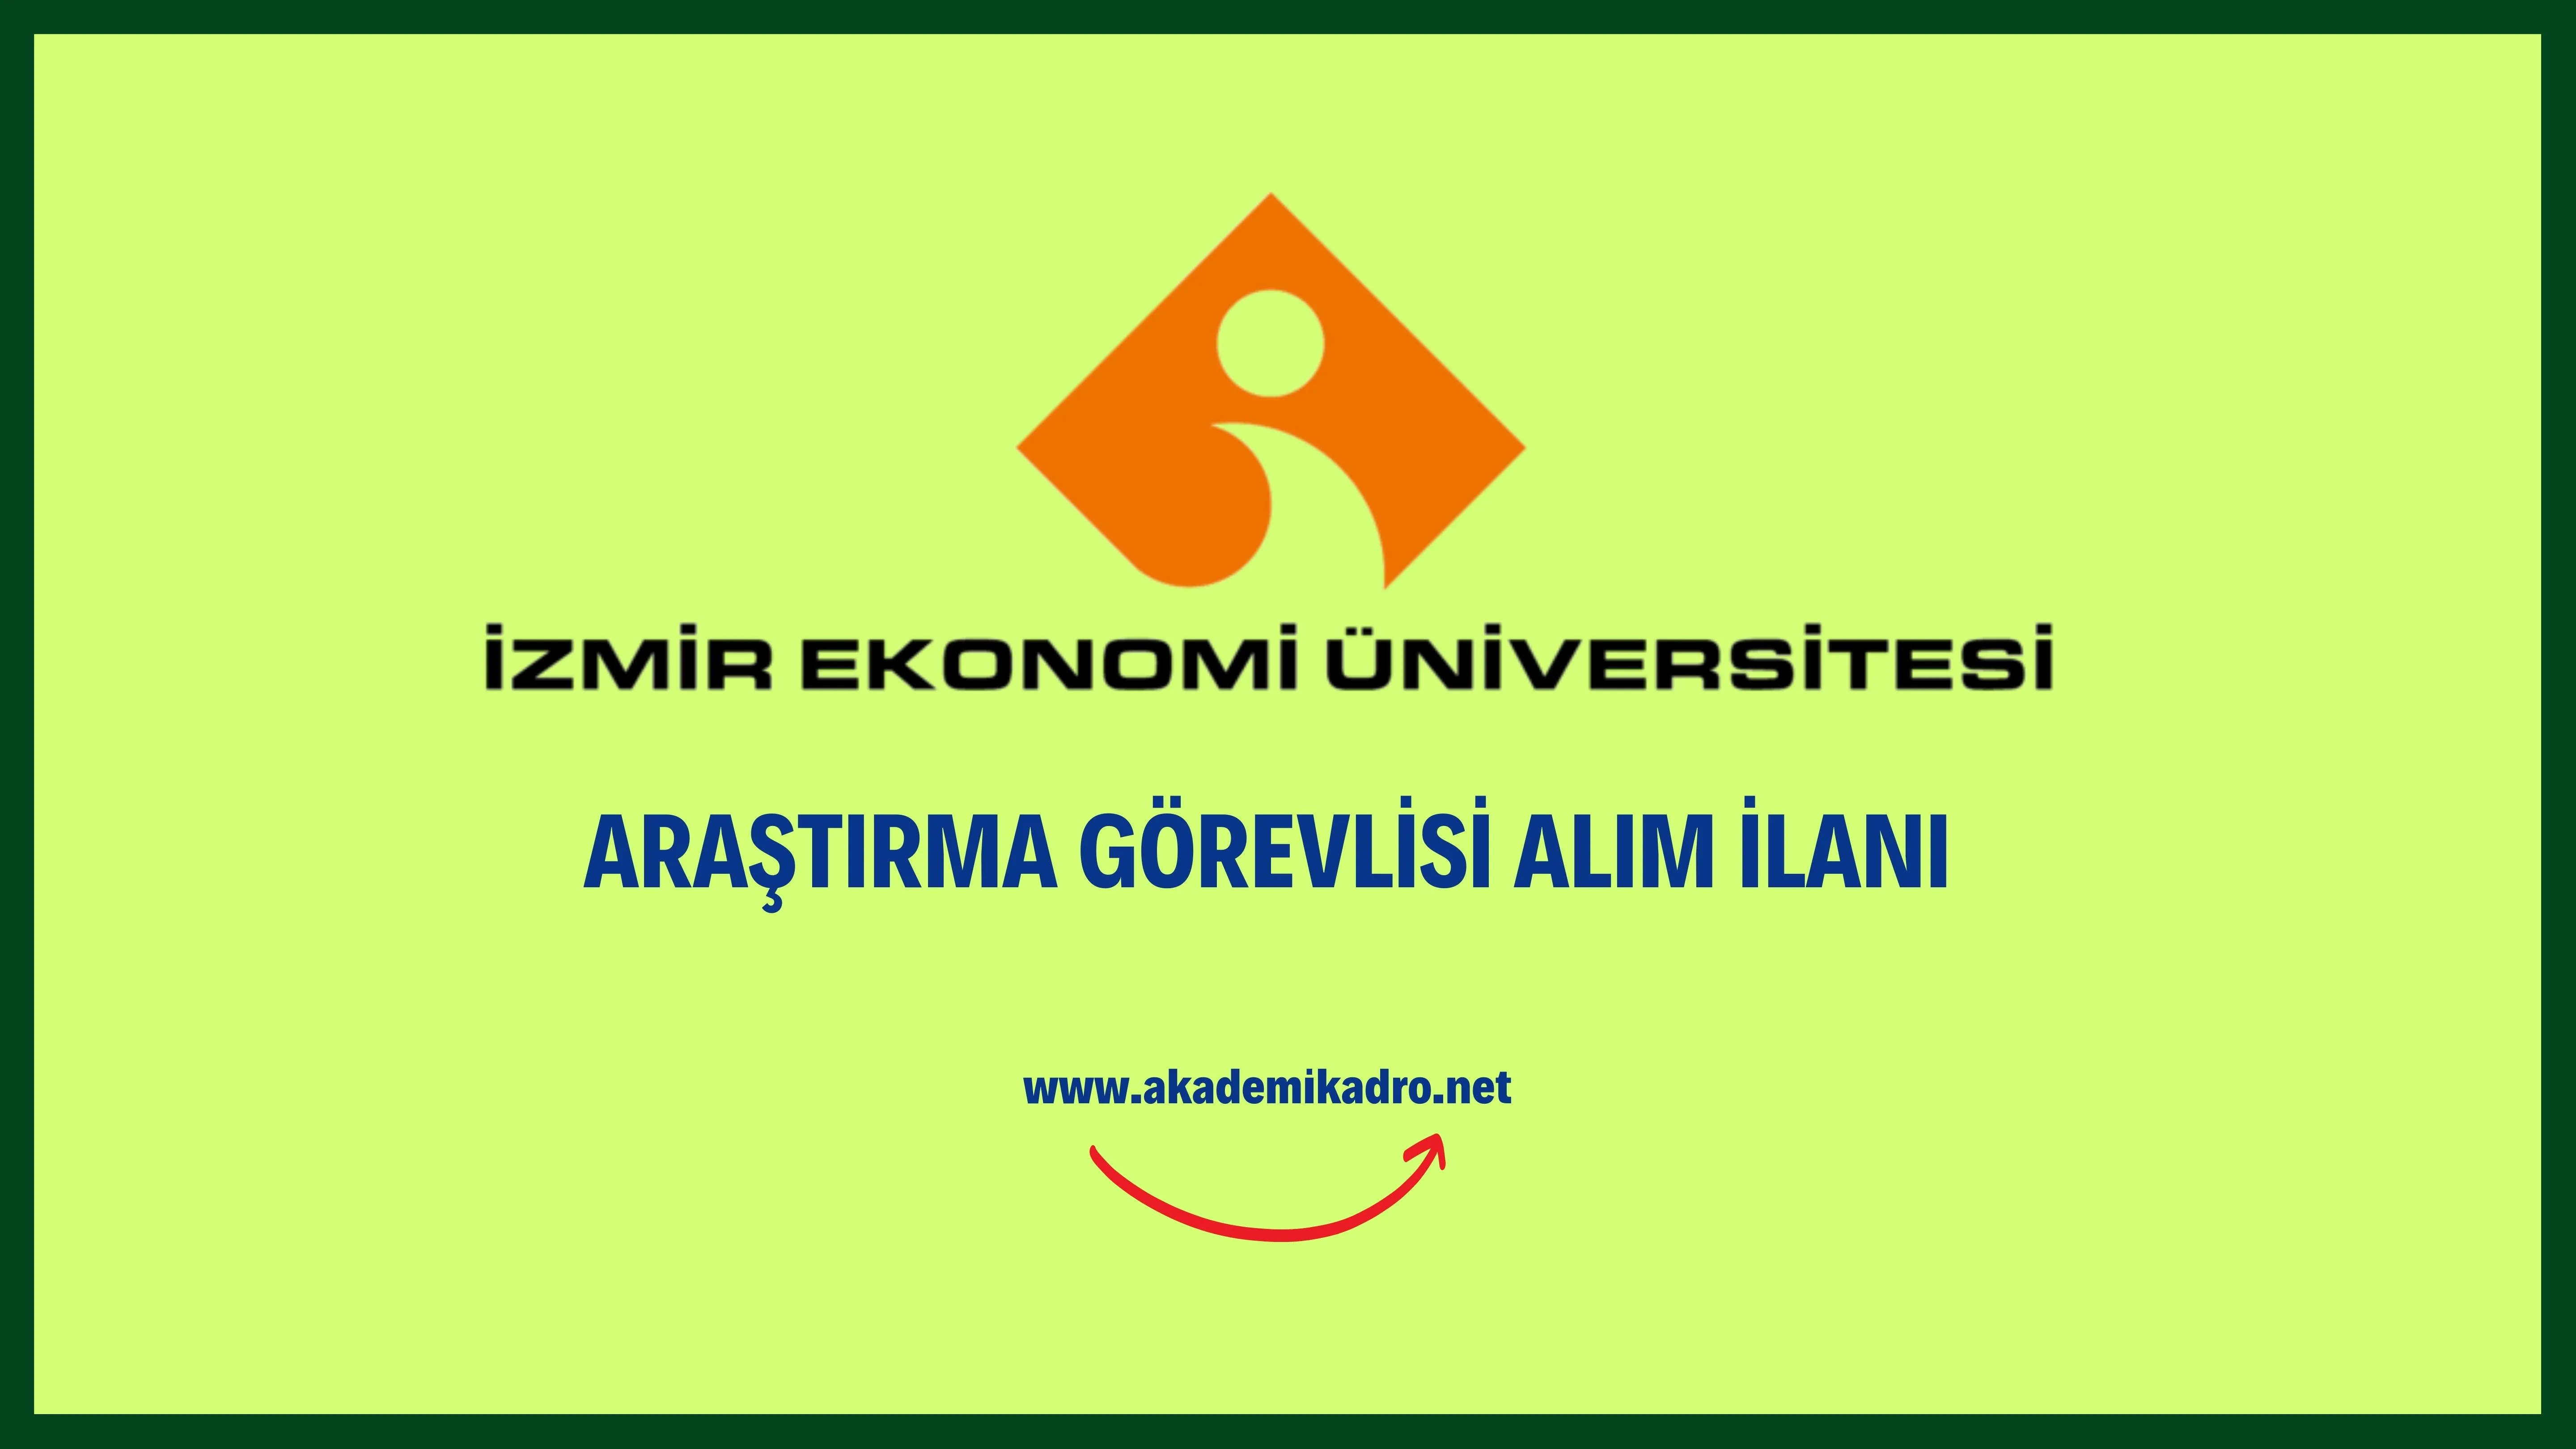 İzmir Ekonomi Üniversitesi 3 Araştırma görevlisi alacaktır. Son başvuru tarihi 09 Aralık 2022.